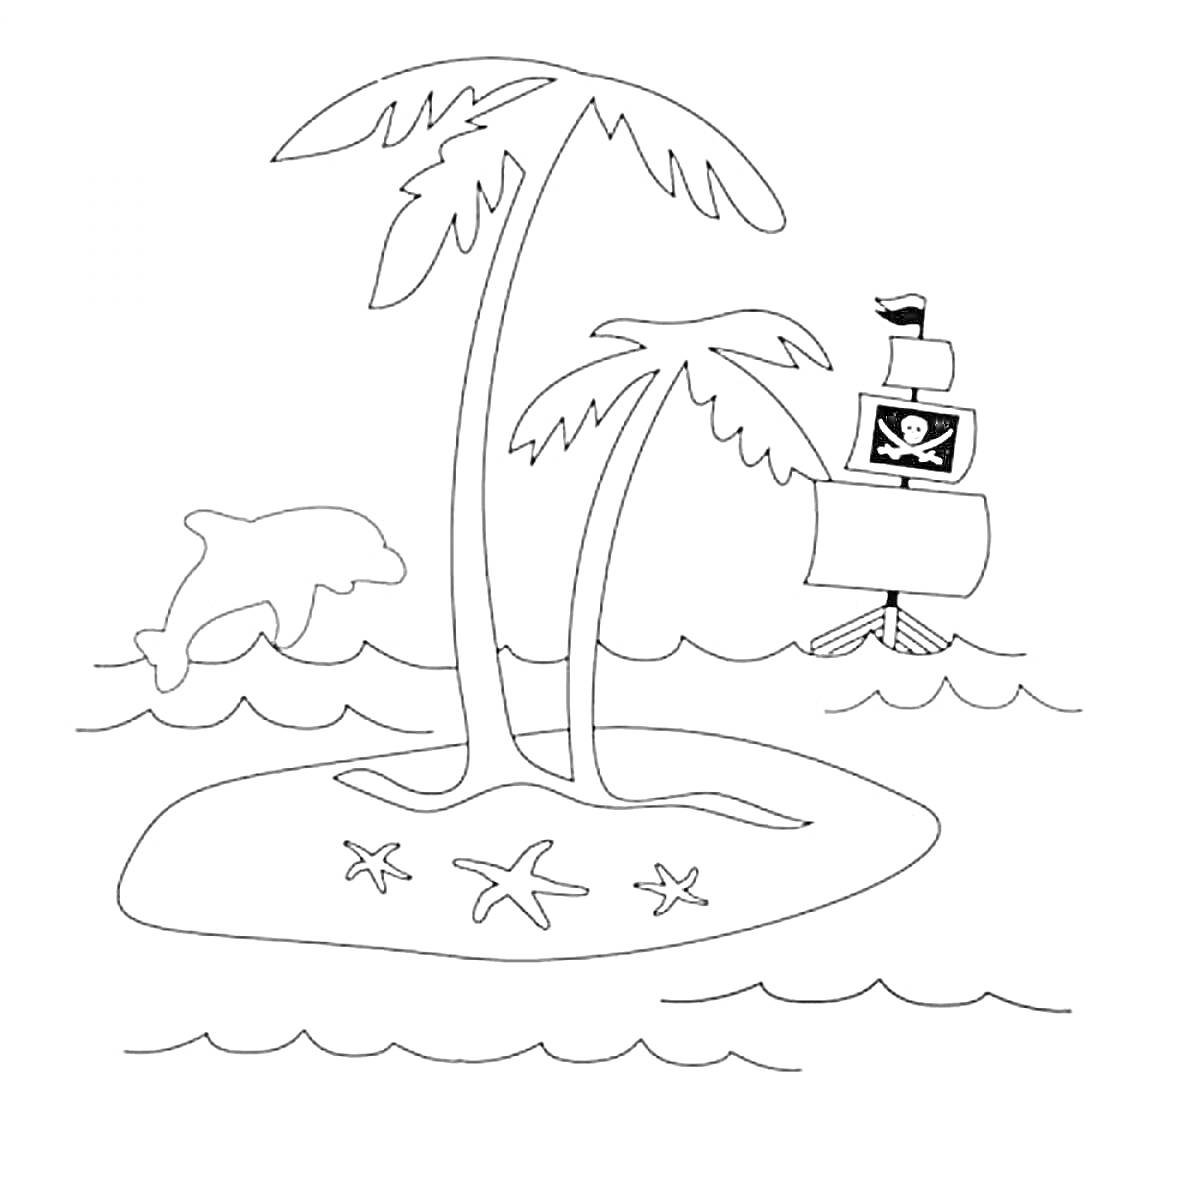 Раскраска Остров с пальмами, дельфином, морскими звездами и пиратским кораблем